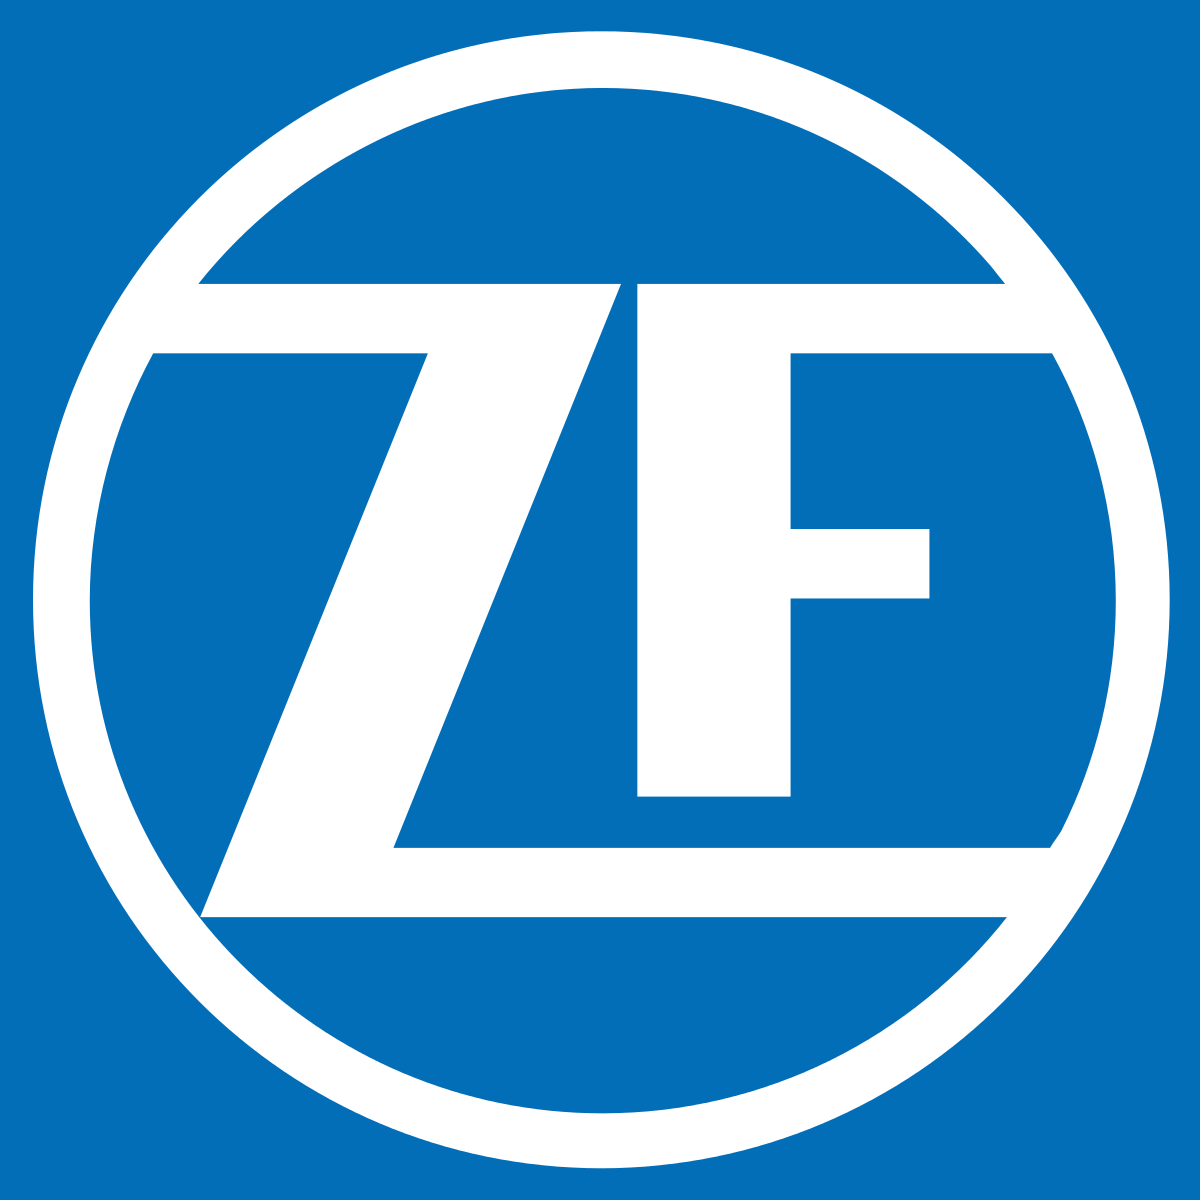 ZF TRW Logo - OptiSolutions s.r.o. Řešení pro průmysl 21. století